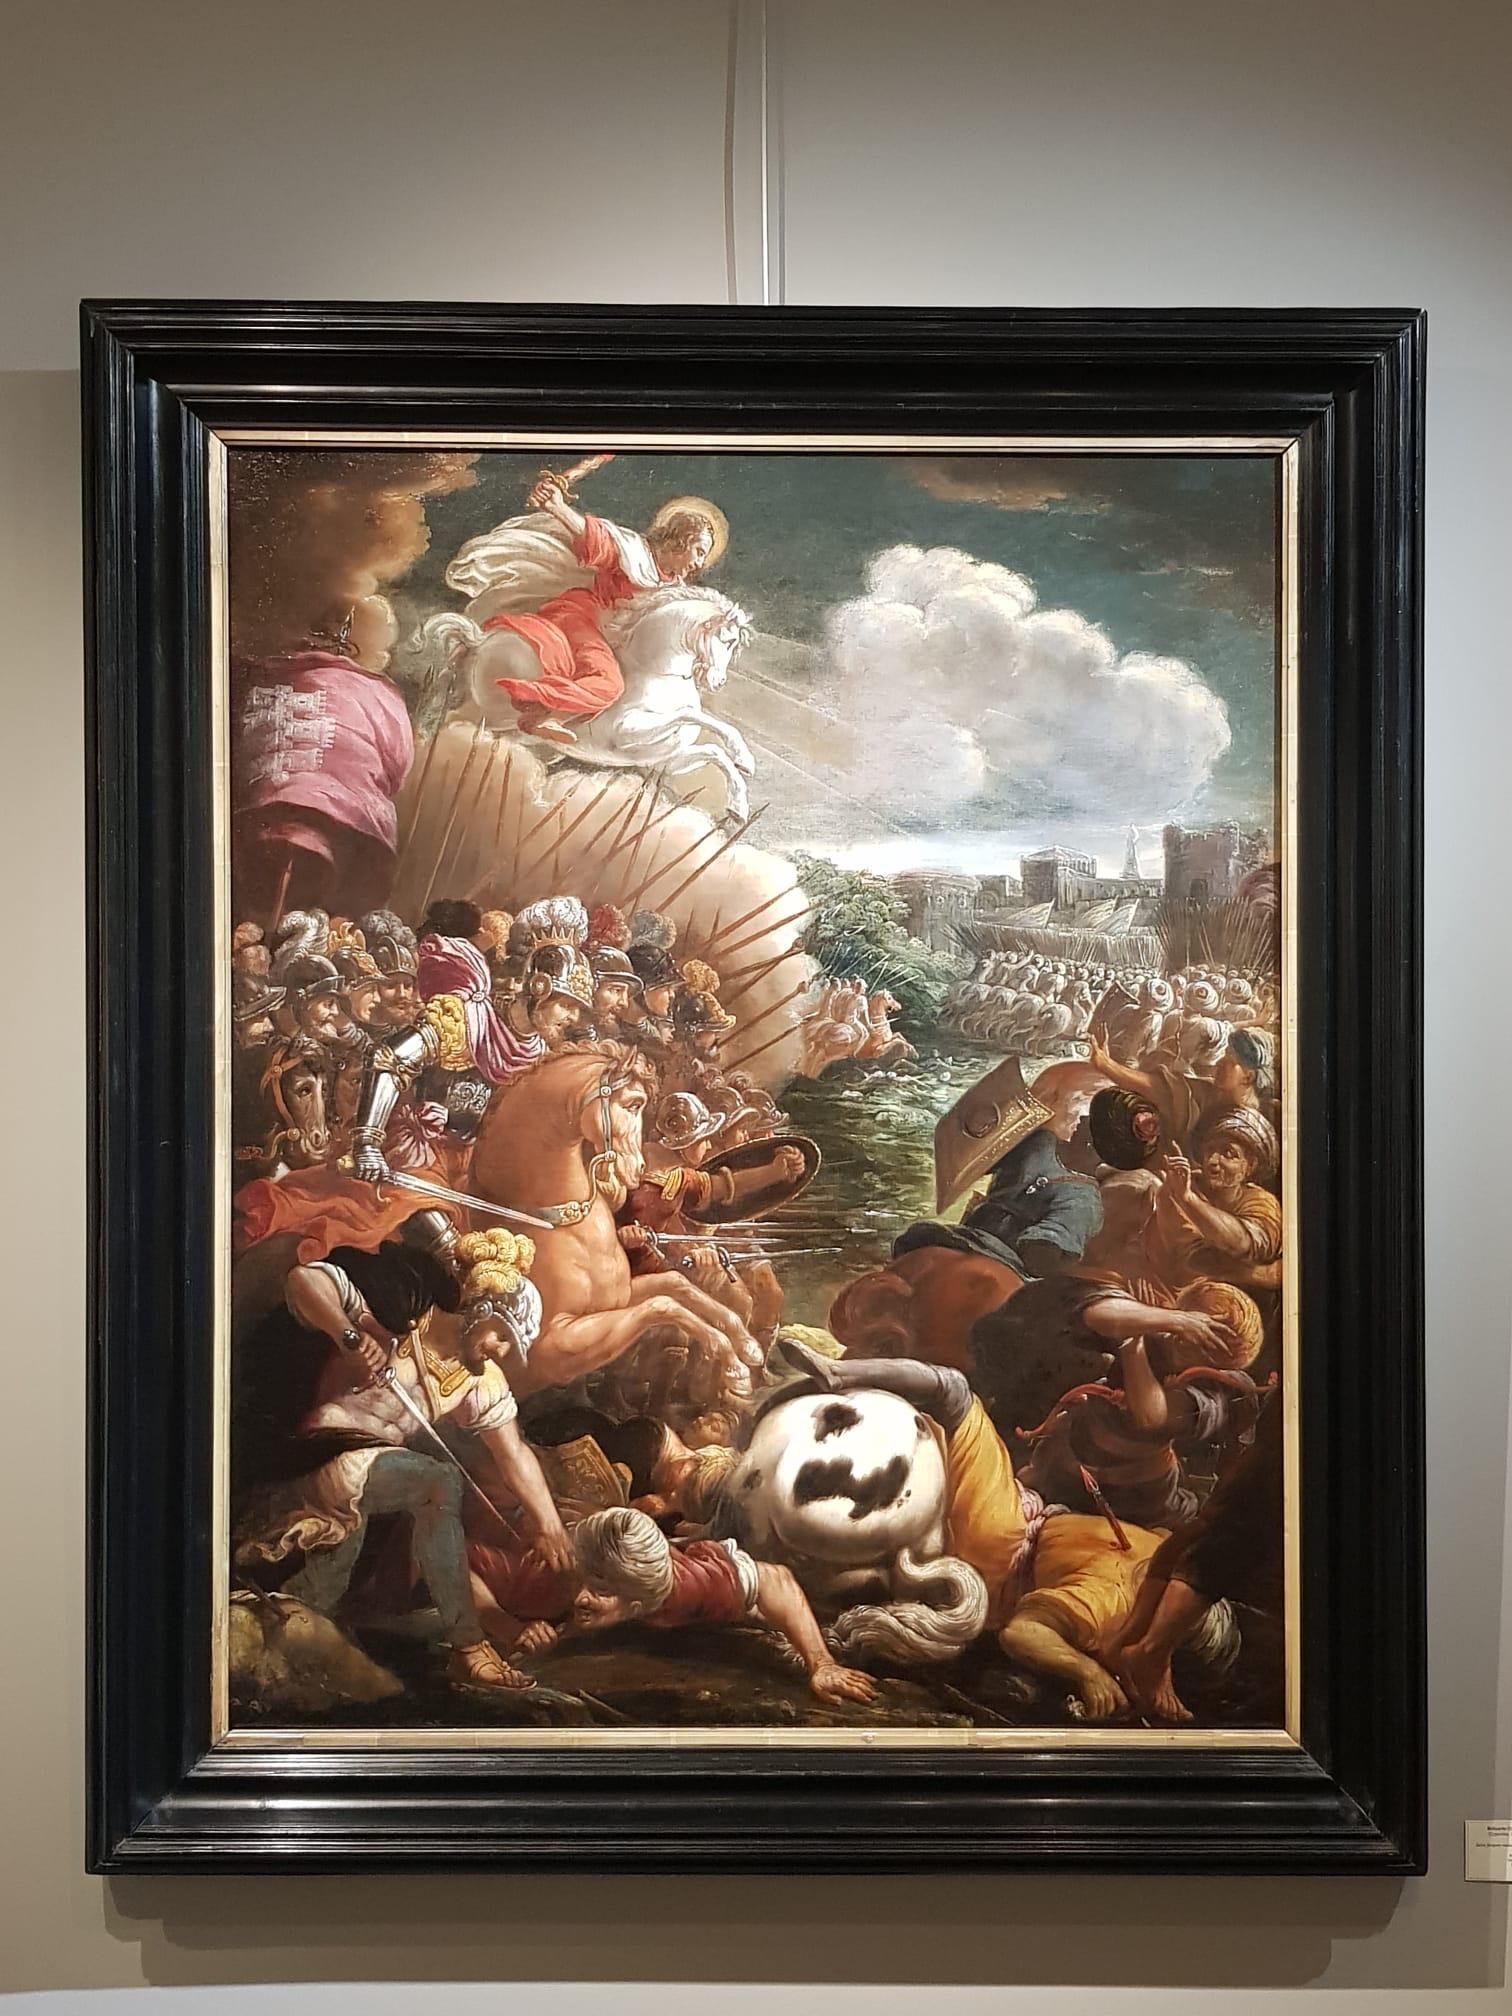 Belisario CORENZIO et son atelier
(Cyparisse, 1558 - Naples, 1646)
Taureau de Saint-Jacques à la bataille de Clavijo
H. 120 cm ; L. 98 cm
Vers 1600

Cette peinture maniériste ardente et colorée est l'œuvre d'un artiste de l'école napolitaine, à